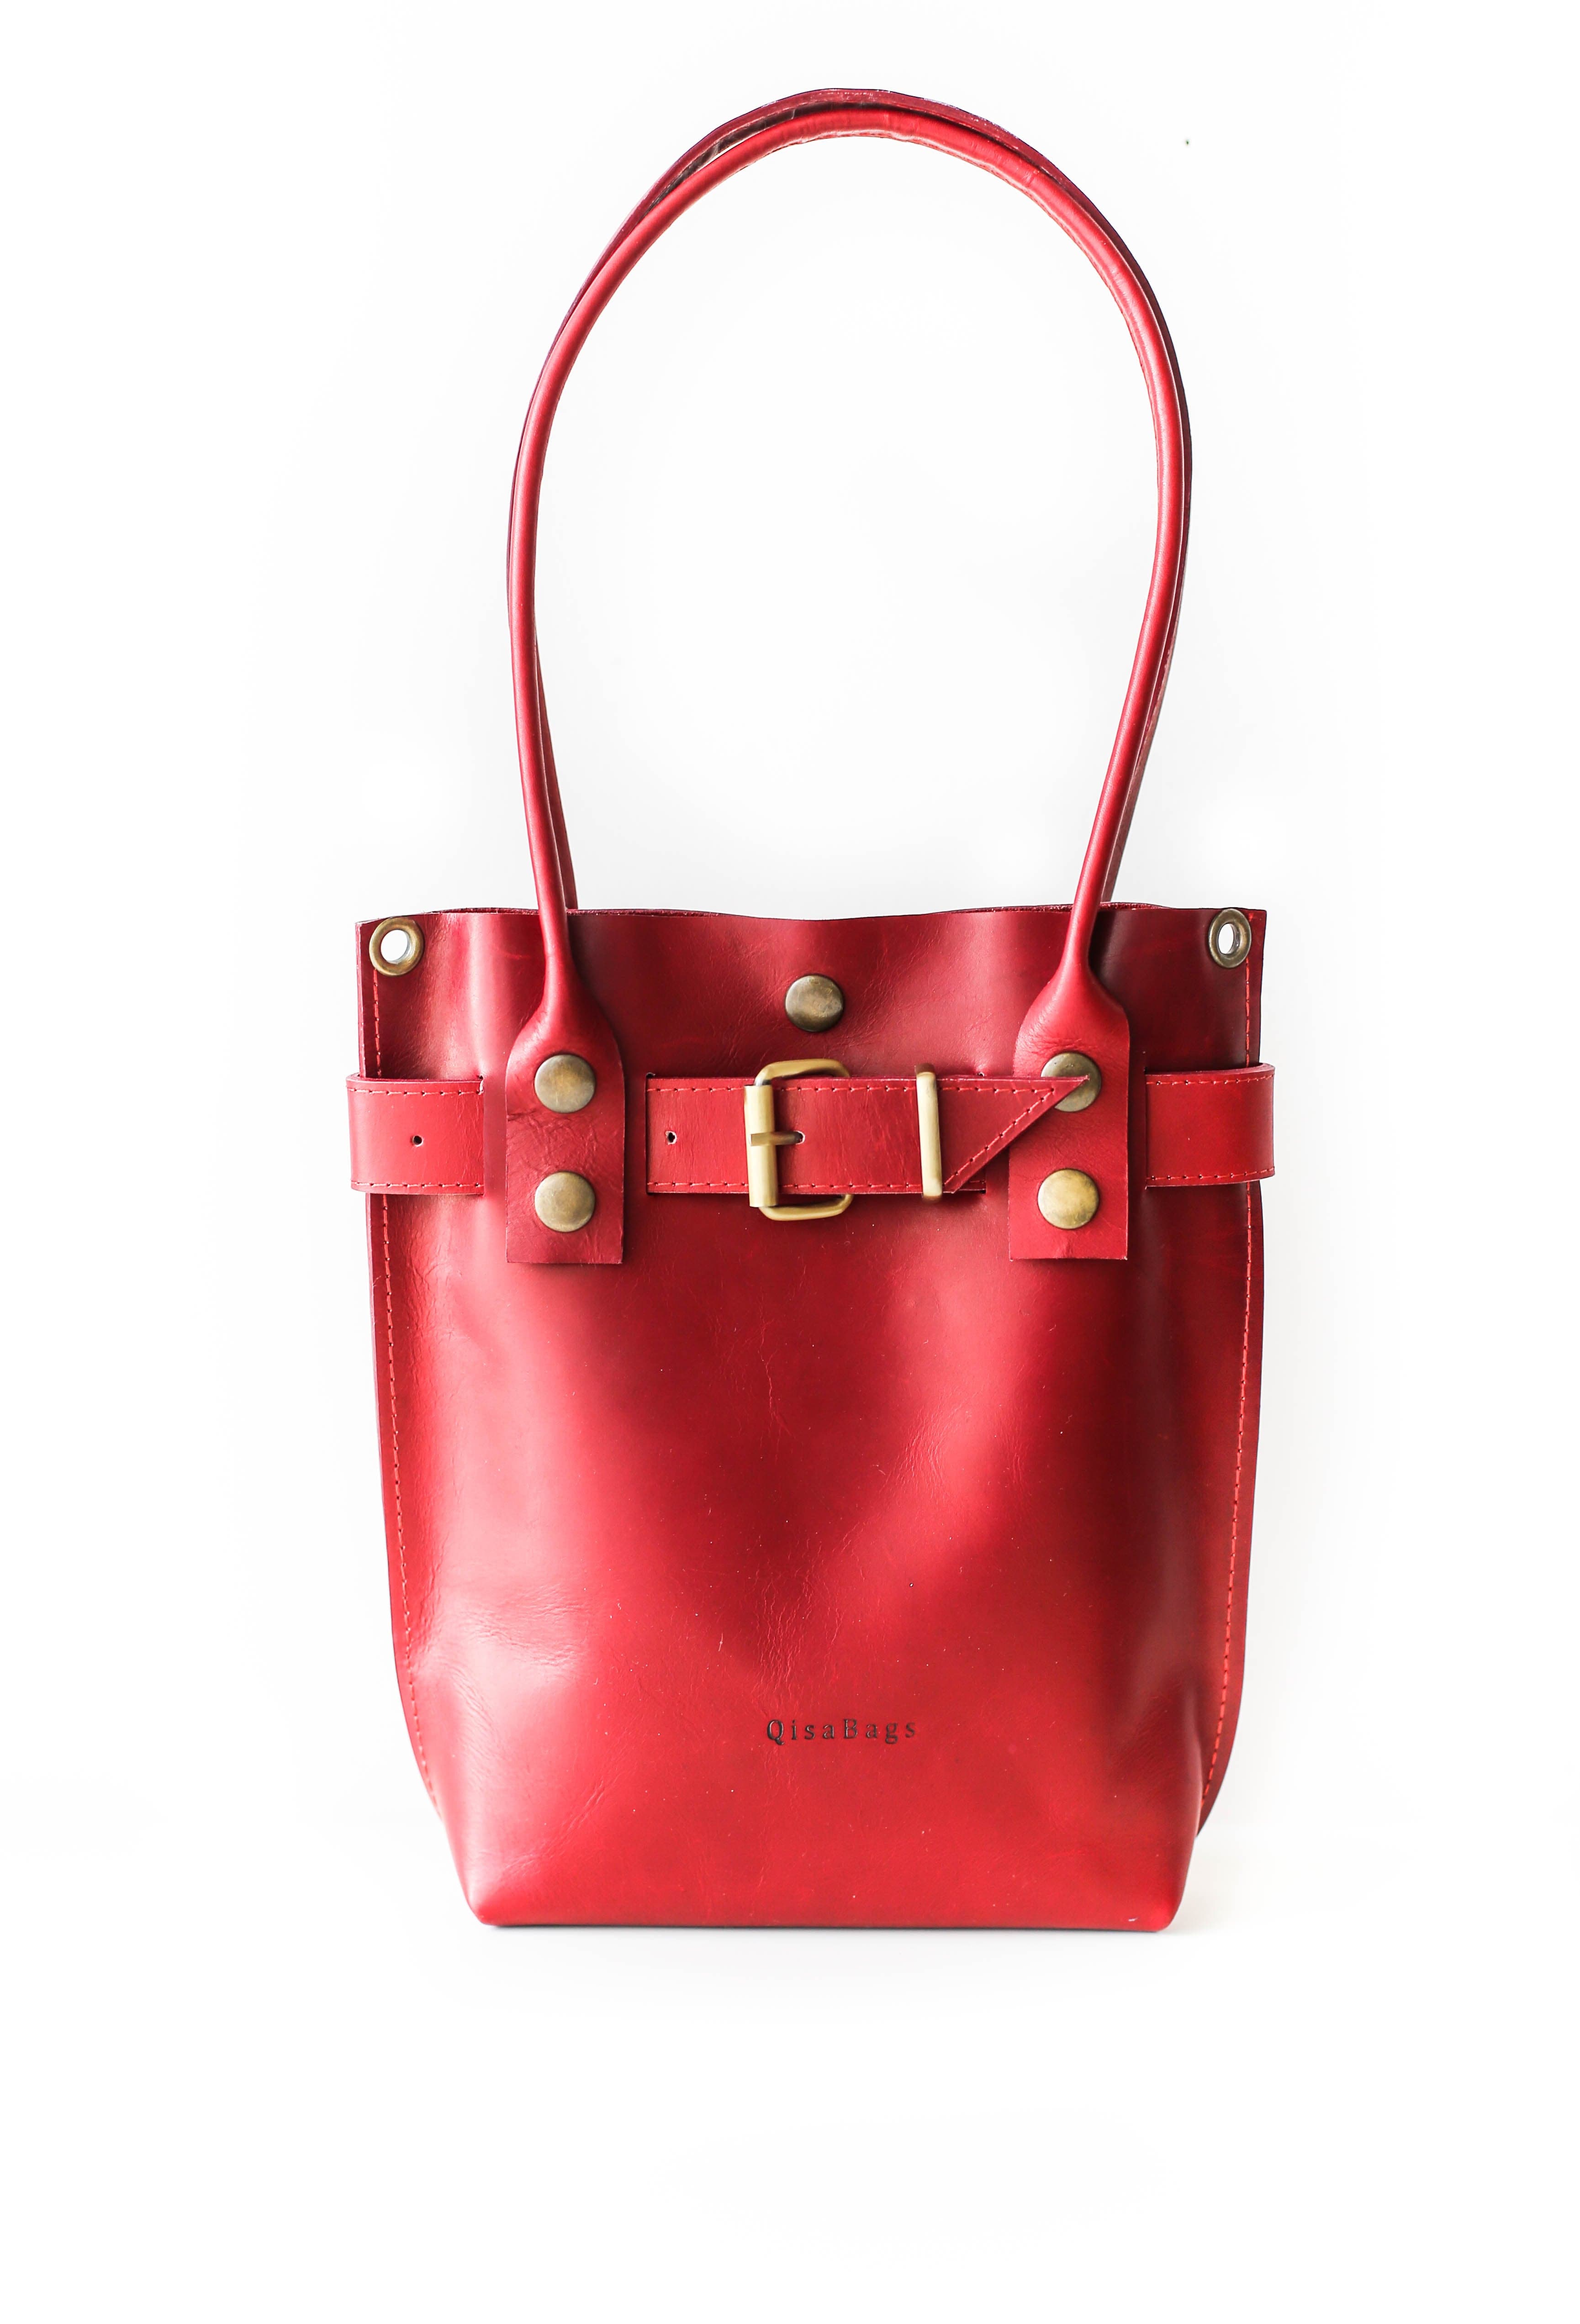 Small Crossbody Shoulder Bag Cardholder Purse or Handbag Forever Young Red  | Crossbody shoulder bag, Shoulder bag, Faux leather purse